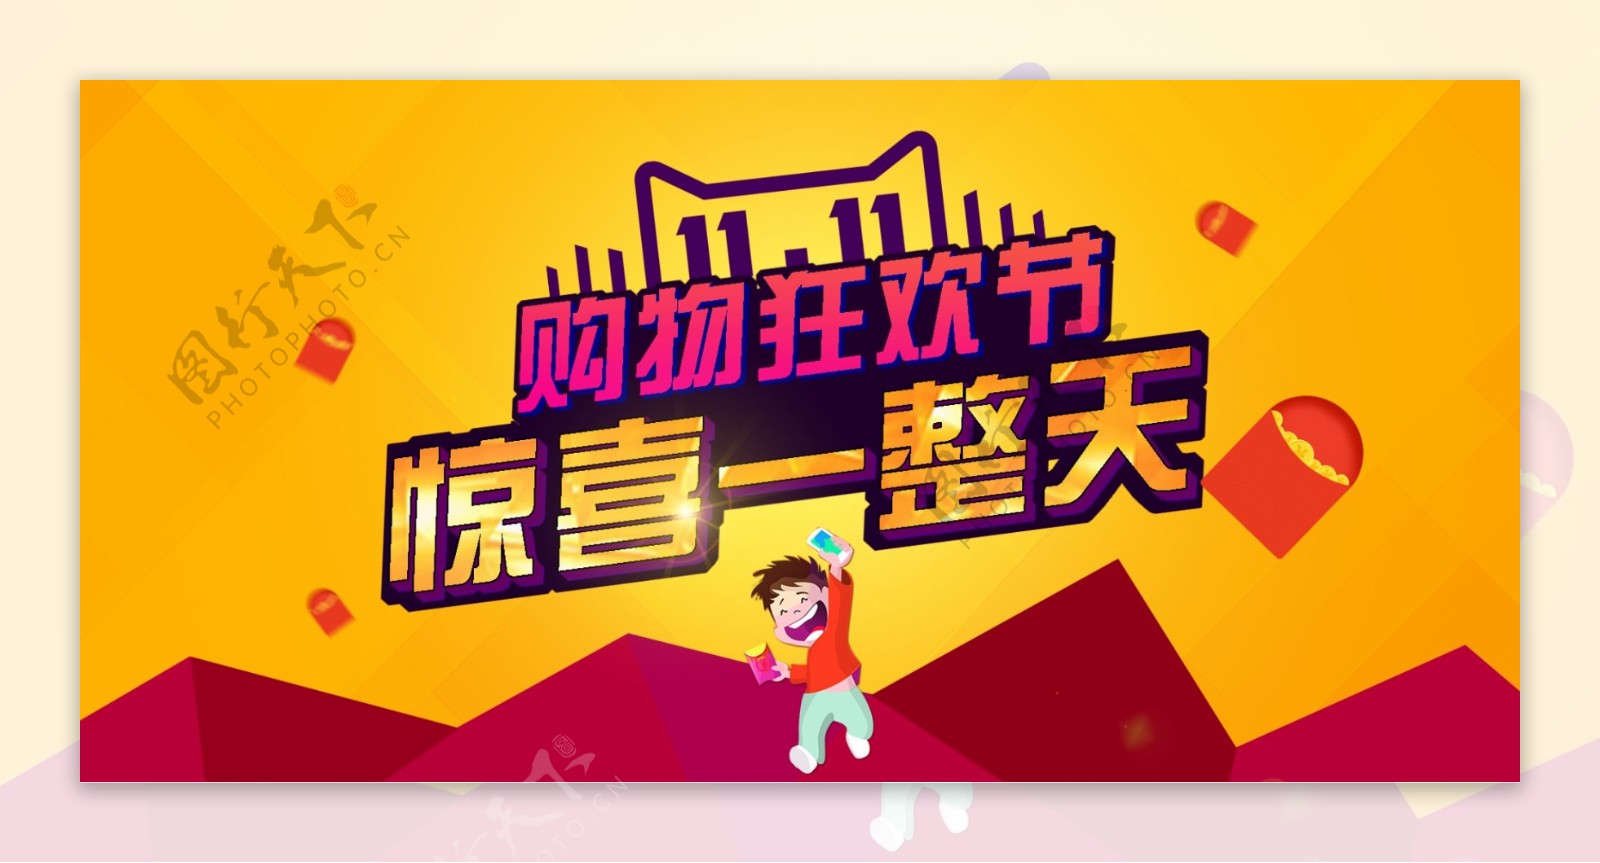 2015淘宝天猫双11购物狂欢节促销海报